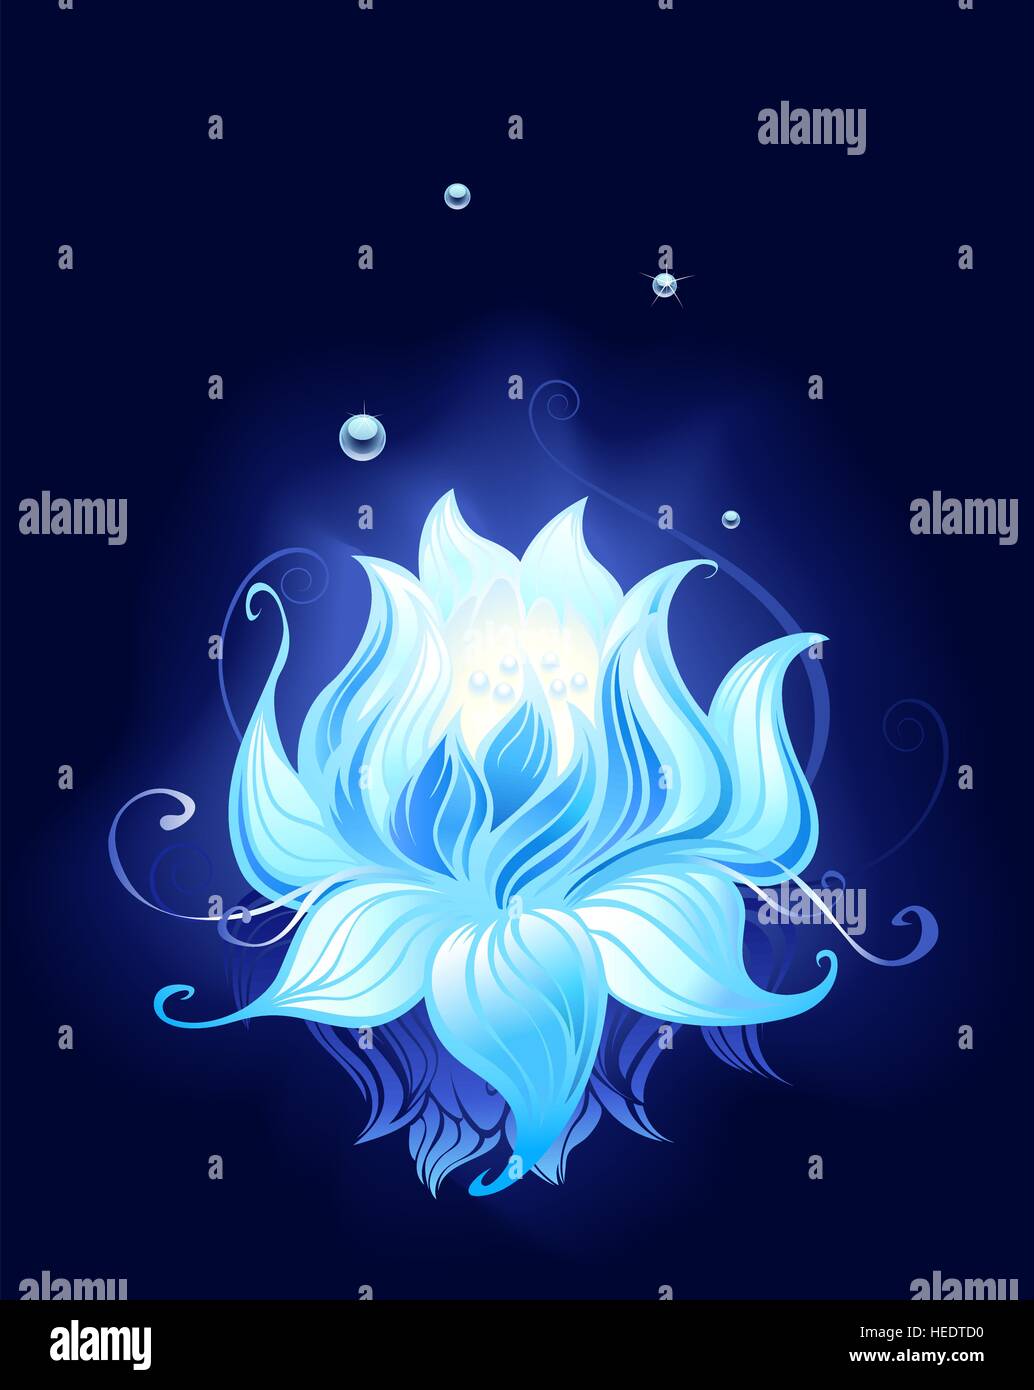 Blue Lotus con gocce di rugiada riflessa nell'acqua scura. Illustrazione Vettoriale